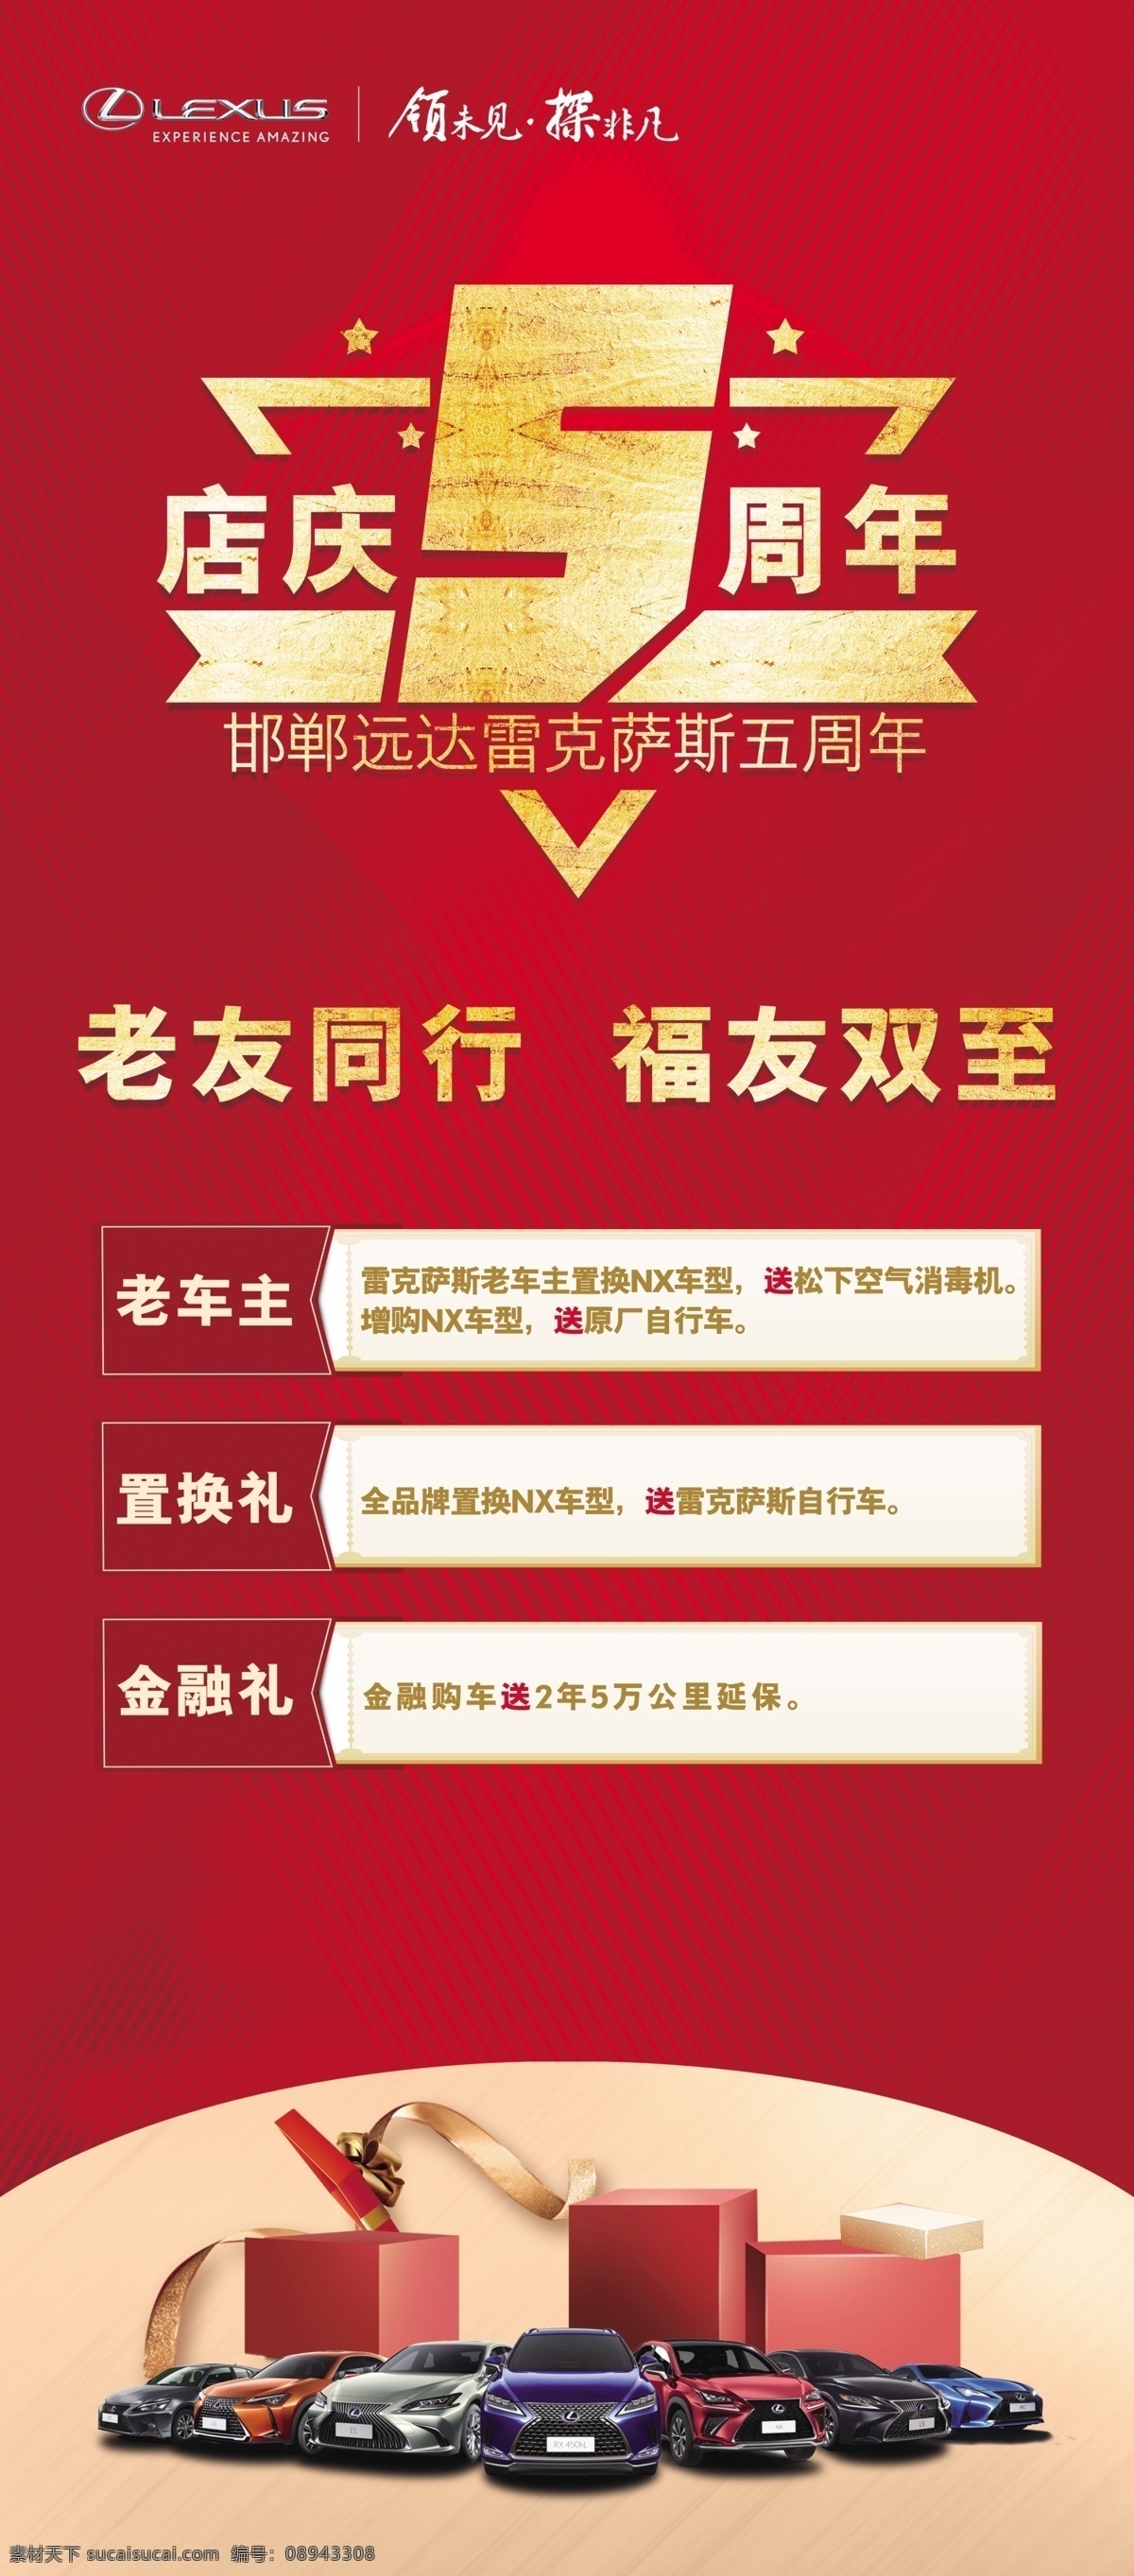 5周年庆 汽车背景 易拉宝 立牌 x展架 红色背景 促销海报 psd素材 分层